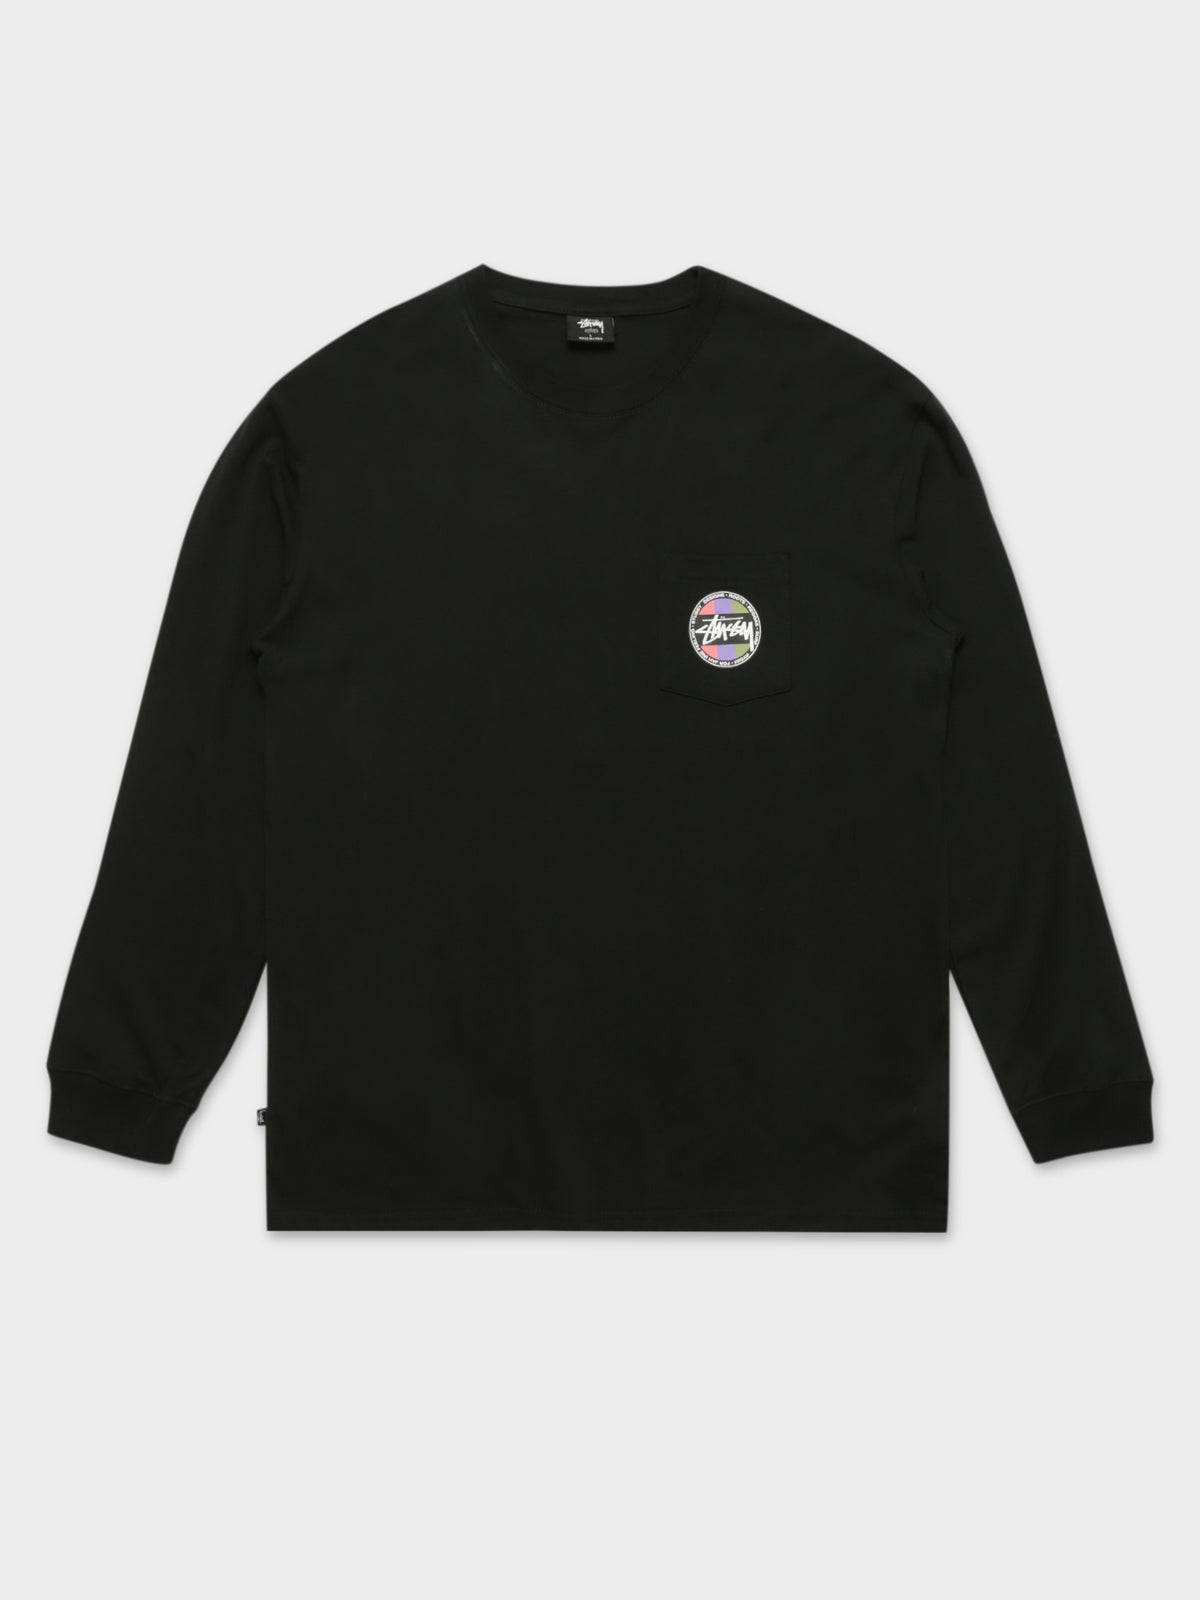 Surf Dot Pocket T-Shirt in Black